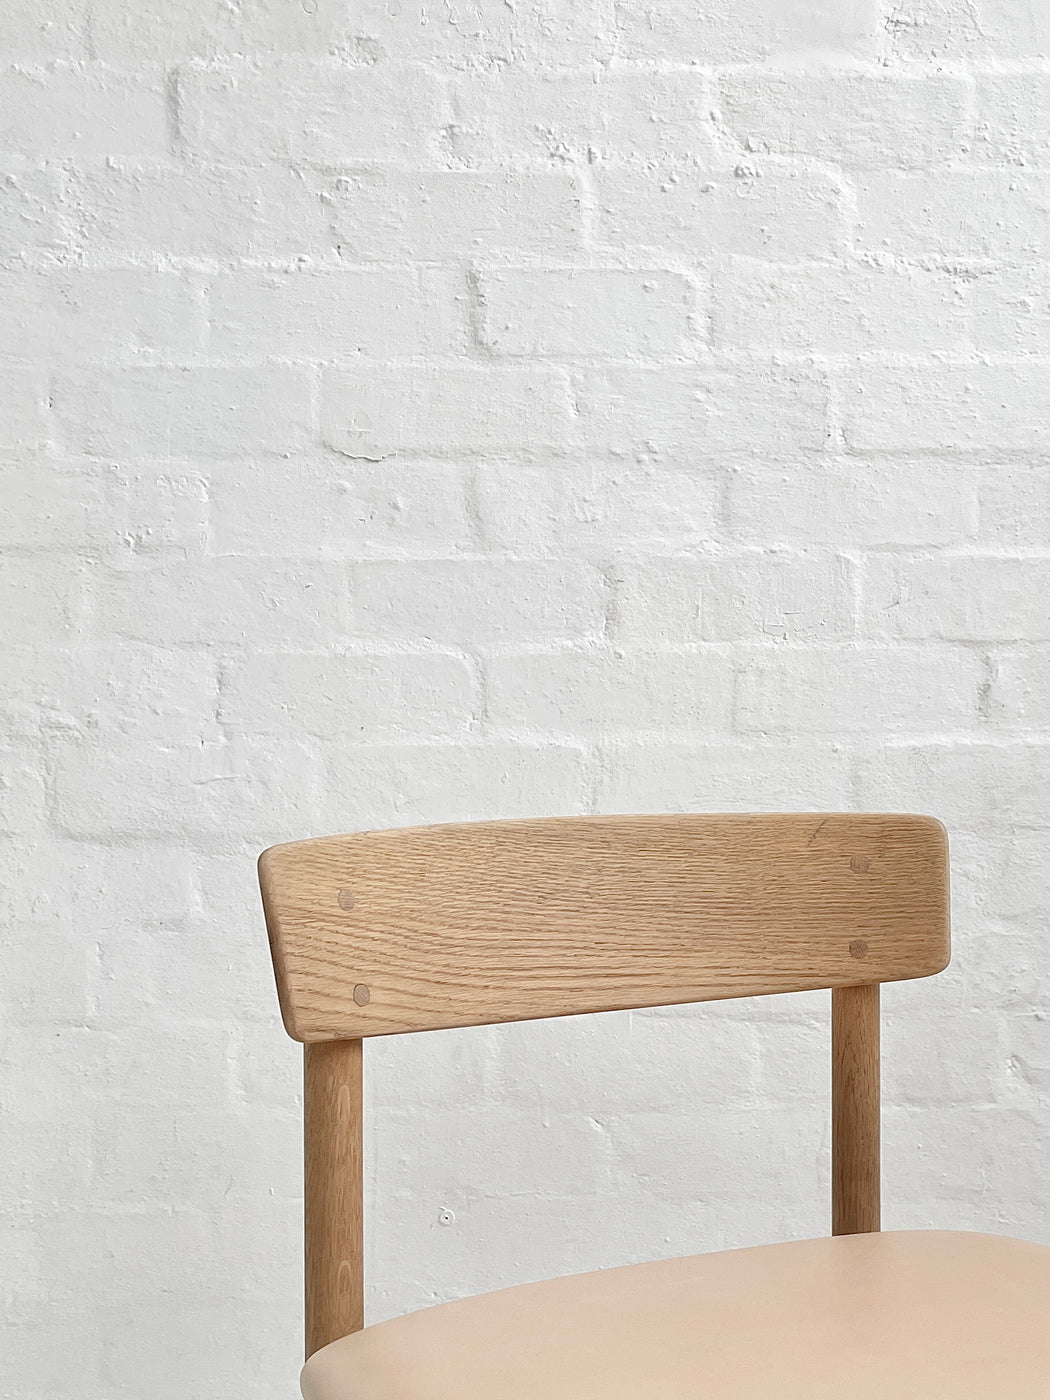 Børge Mogensen 'Model 3236' Oak Chair